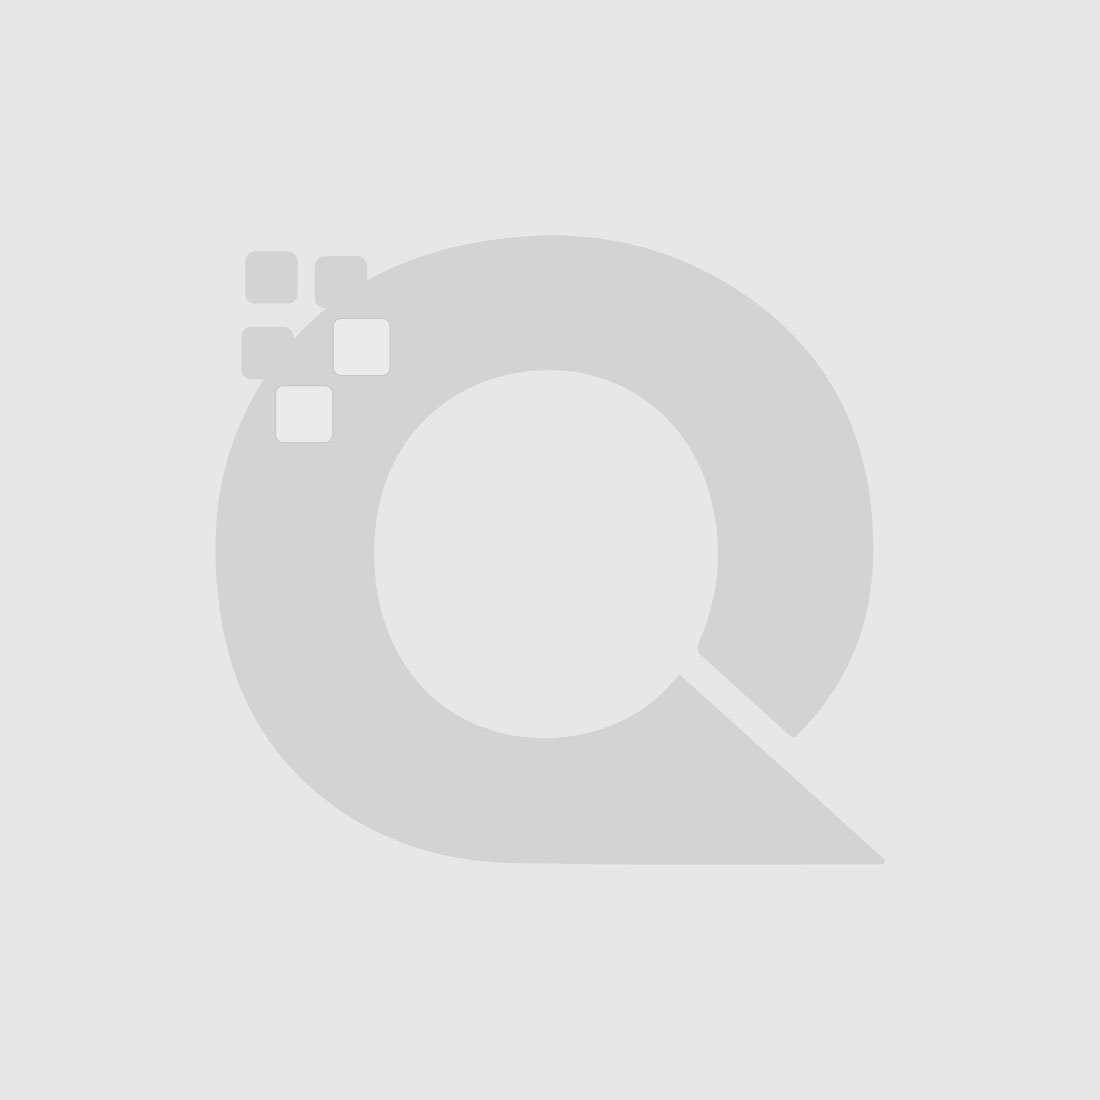 Guerniss Paris Velvet Matte Lipstick - GS030 - 3.5g